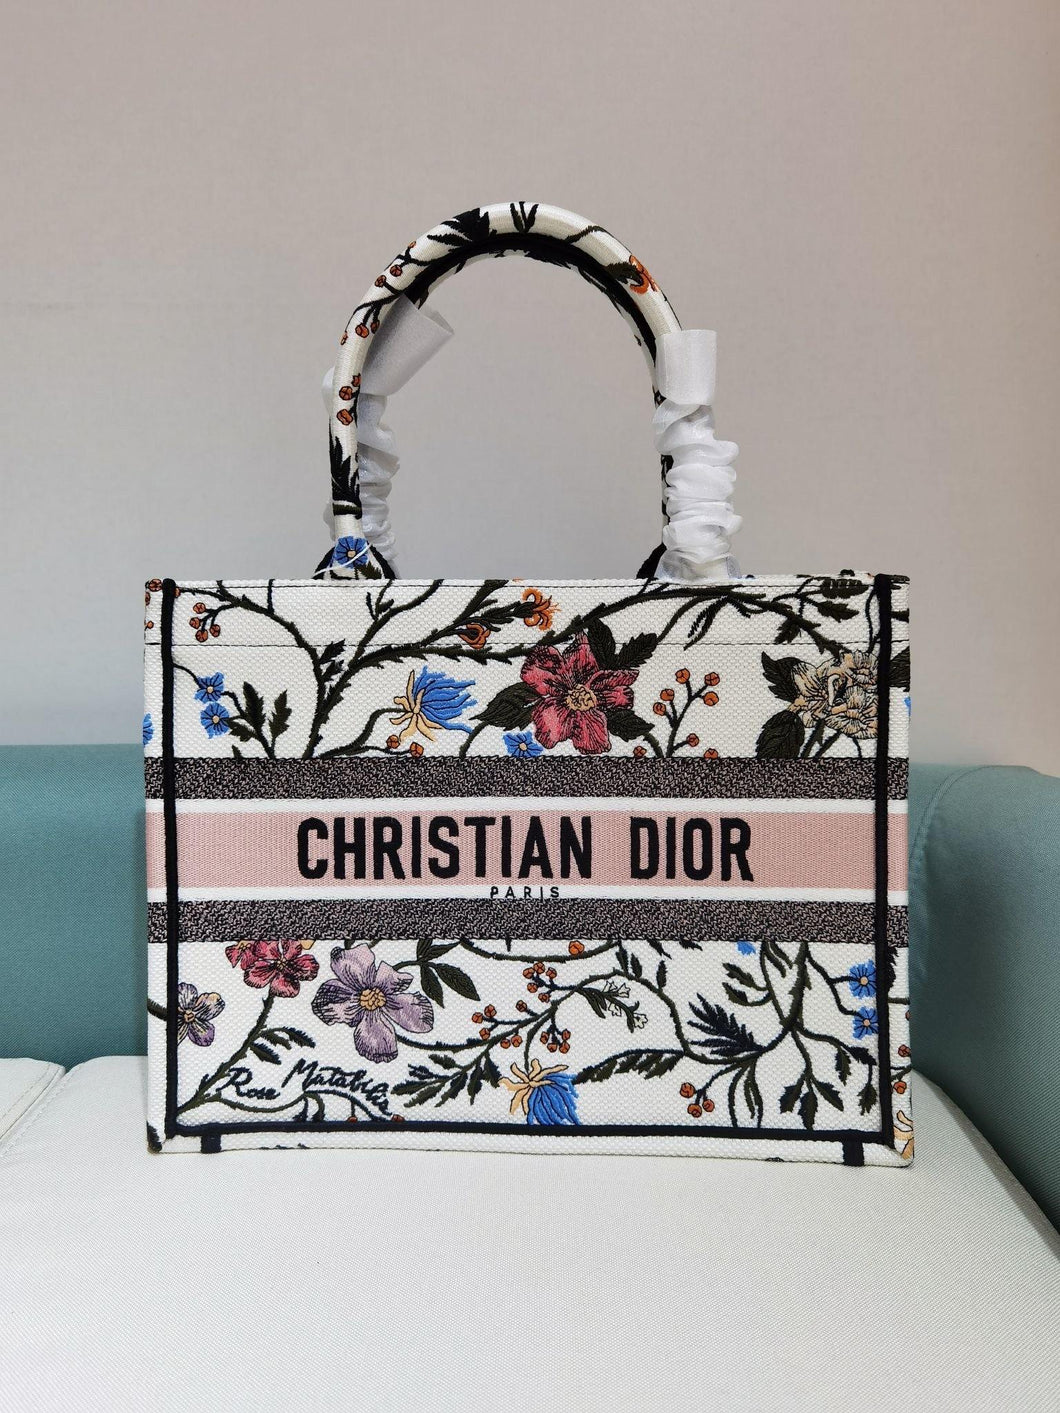 Christian Dior Small Book Tote Bag - LUXURY KLOZETT